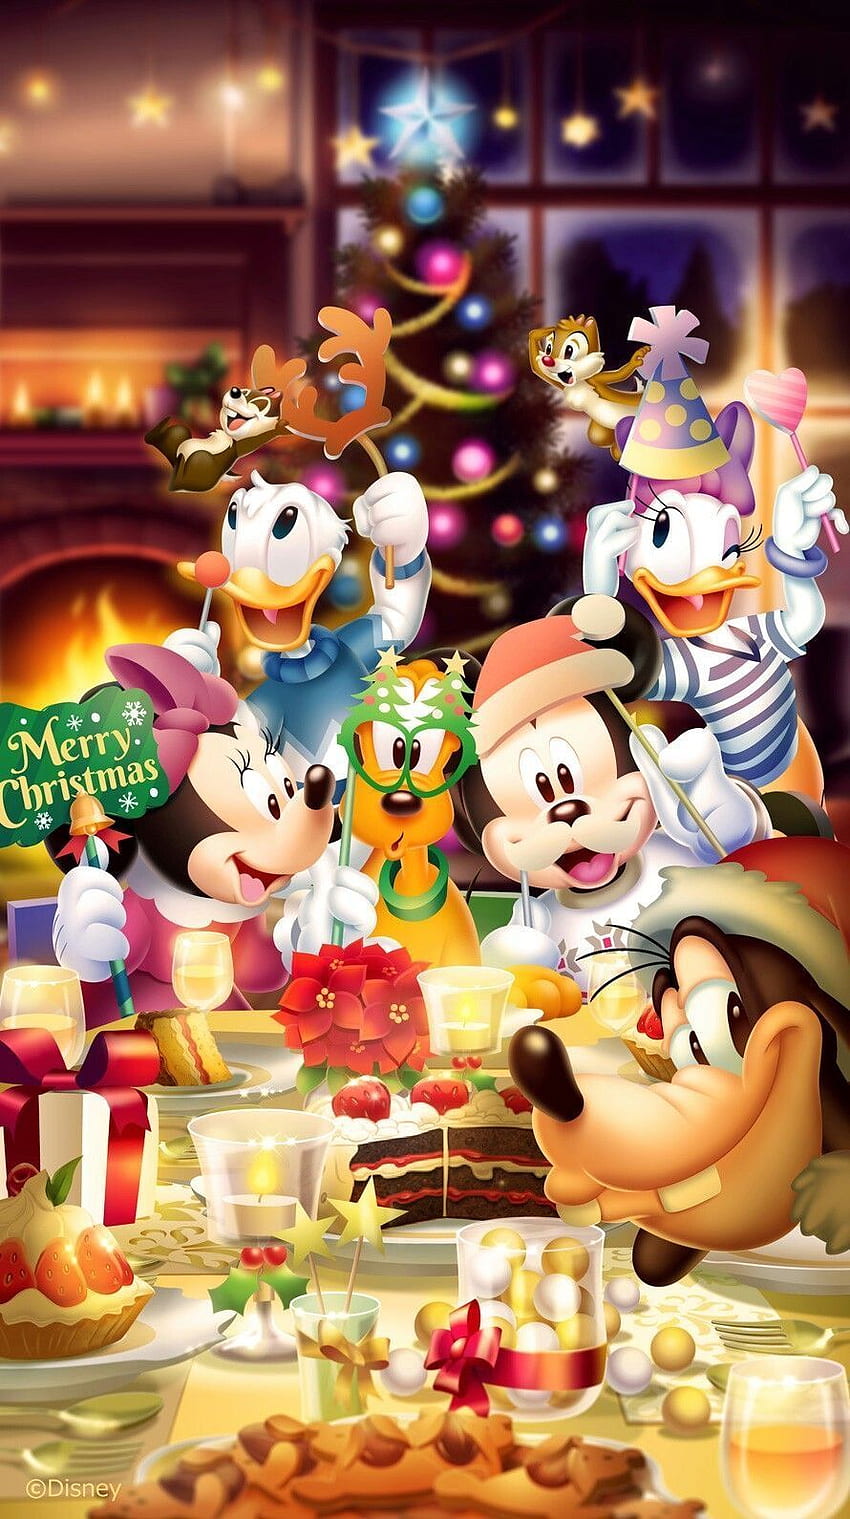 Giáng sinh cùng Mickey - Sẵn sàng cho một mùa Giáng sinh đầy hạnh phúc và niềm vui? Hãy cùng Mickey và những nhân vật Disney ưa thích của bạn để tạo nên những kỷ niệm đáng nhớ. Với bộ sưu tập hình ảnh Giáng sinh đầy màu sắc và hấp dẫn này, bạn sẽ không thể ngừng cười và thích thú!